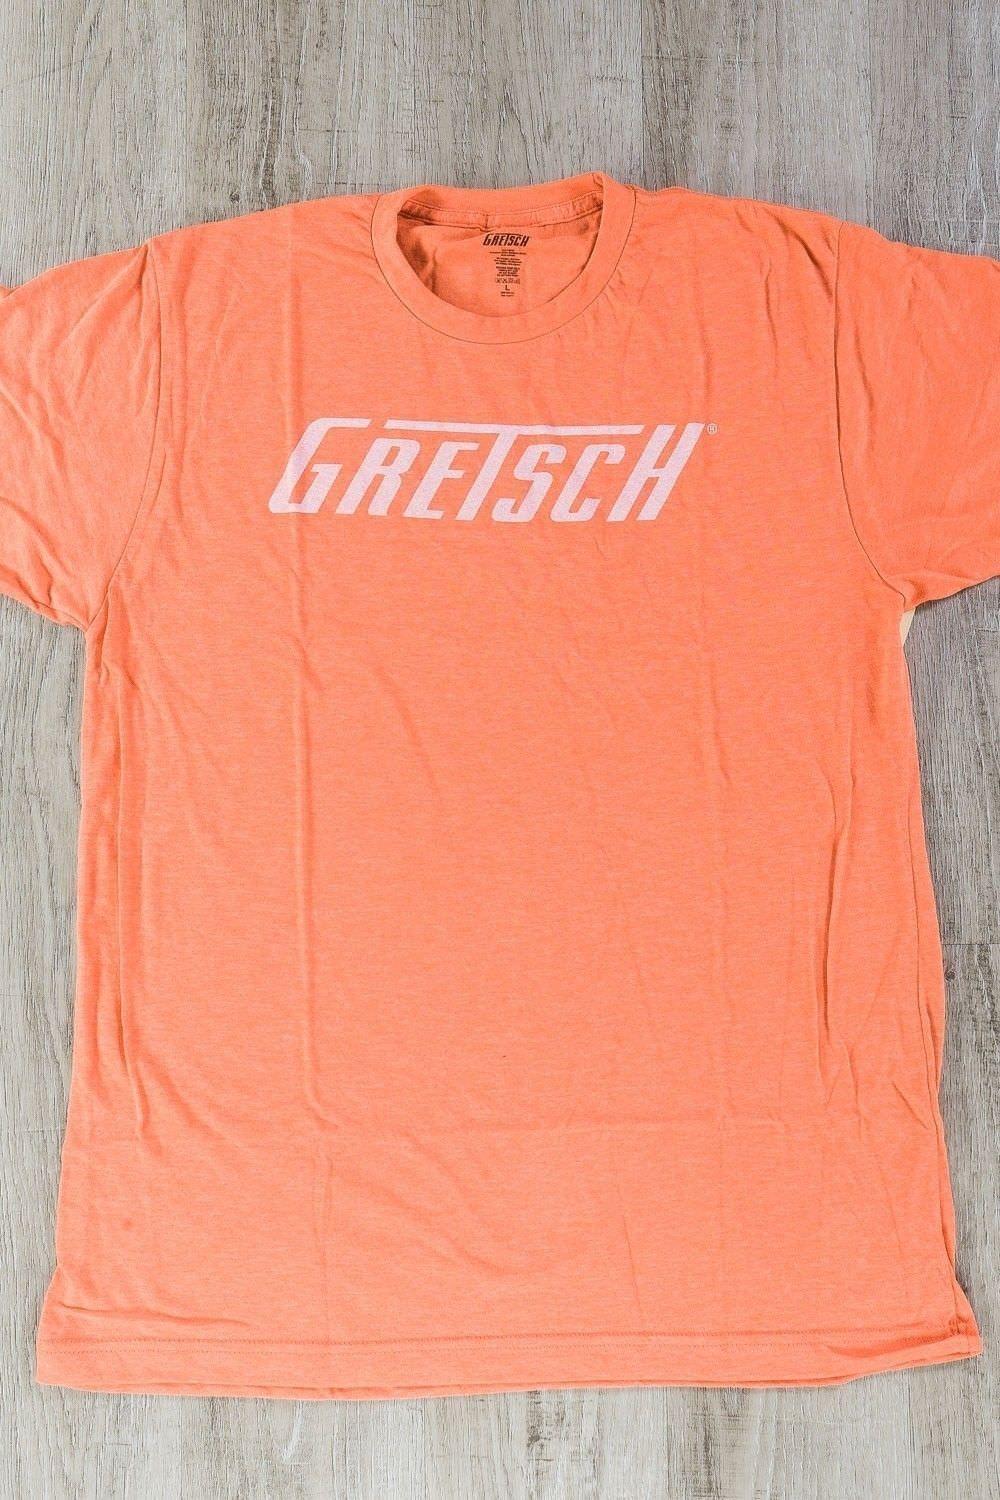 Large Red P Logo - Gretsch Logo T-Shirt Orange Large Short Sleeve Tee Shirt P N 0994876606